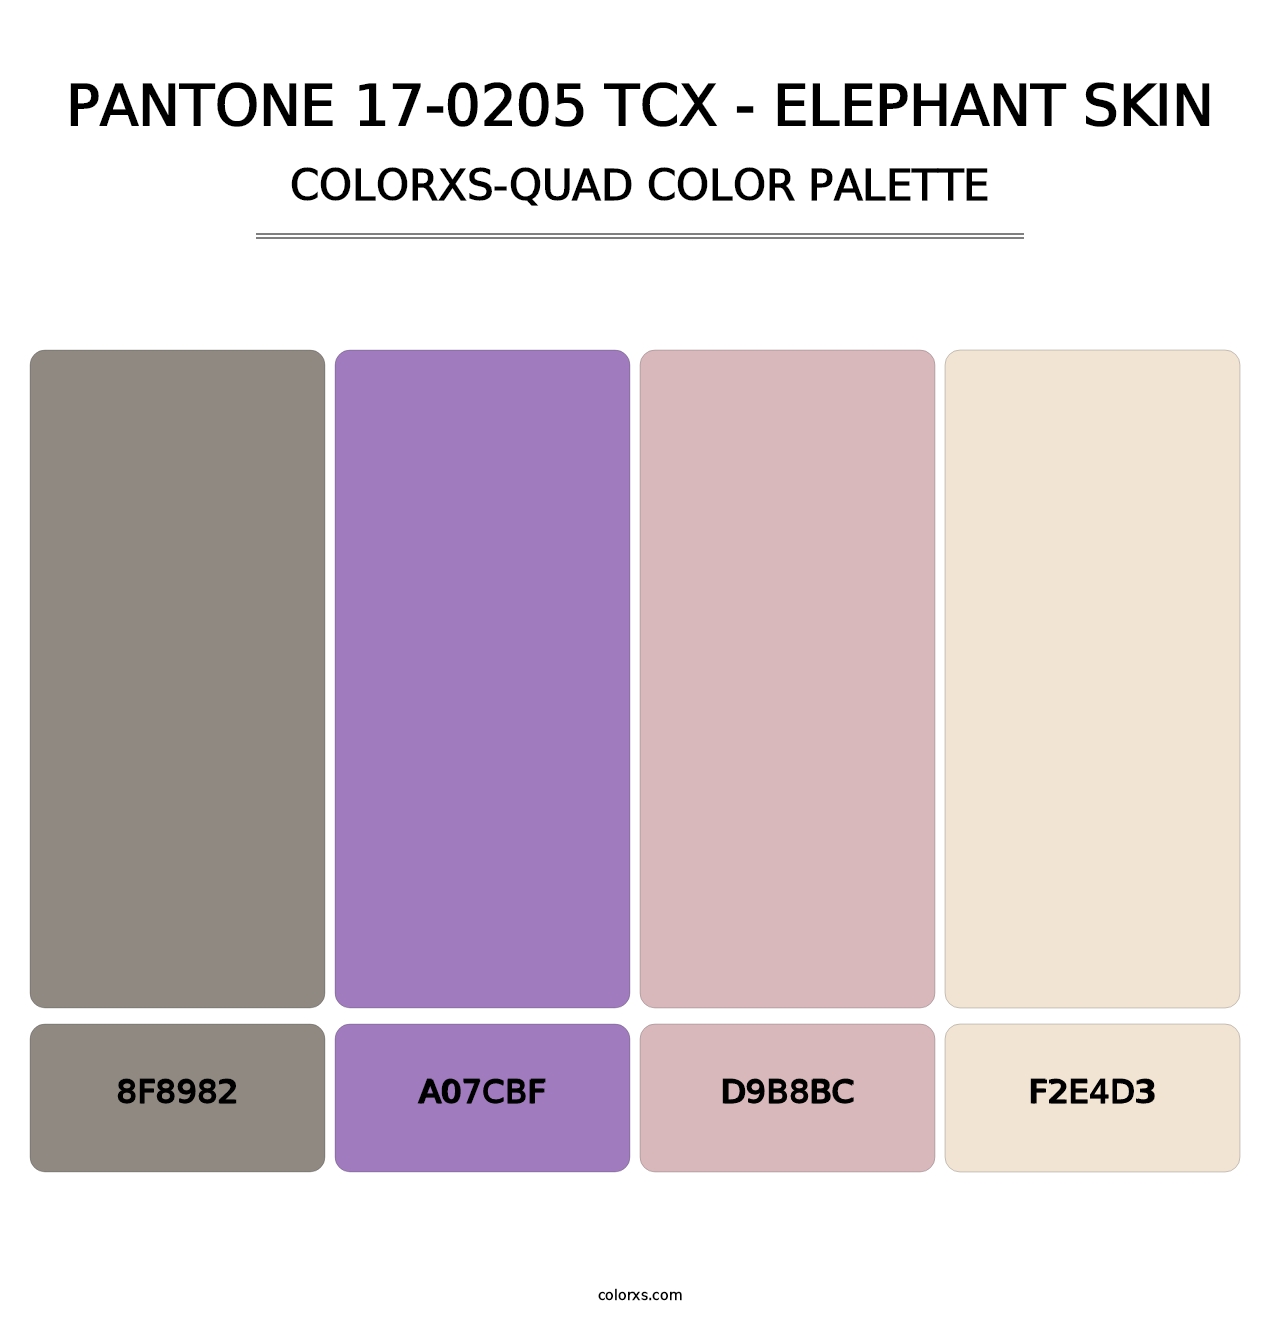 PANTONE 17-0205 TCX - Elephant Skin - Colorxs Quad Palette